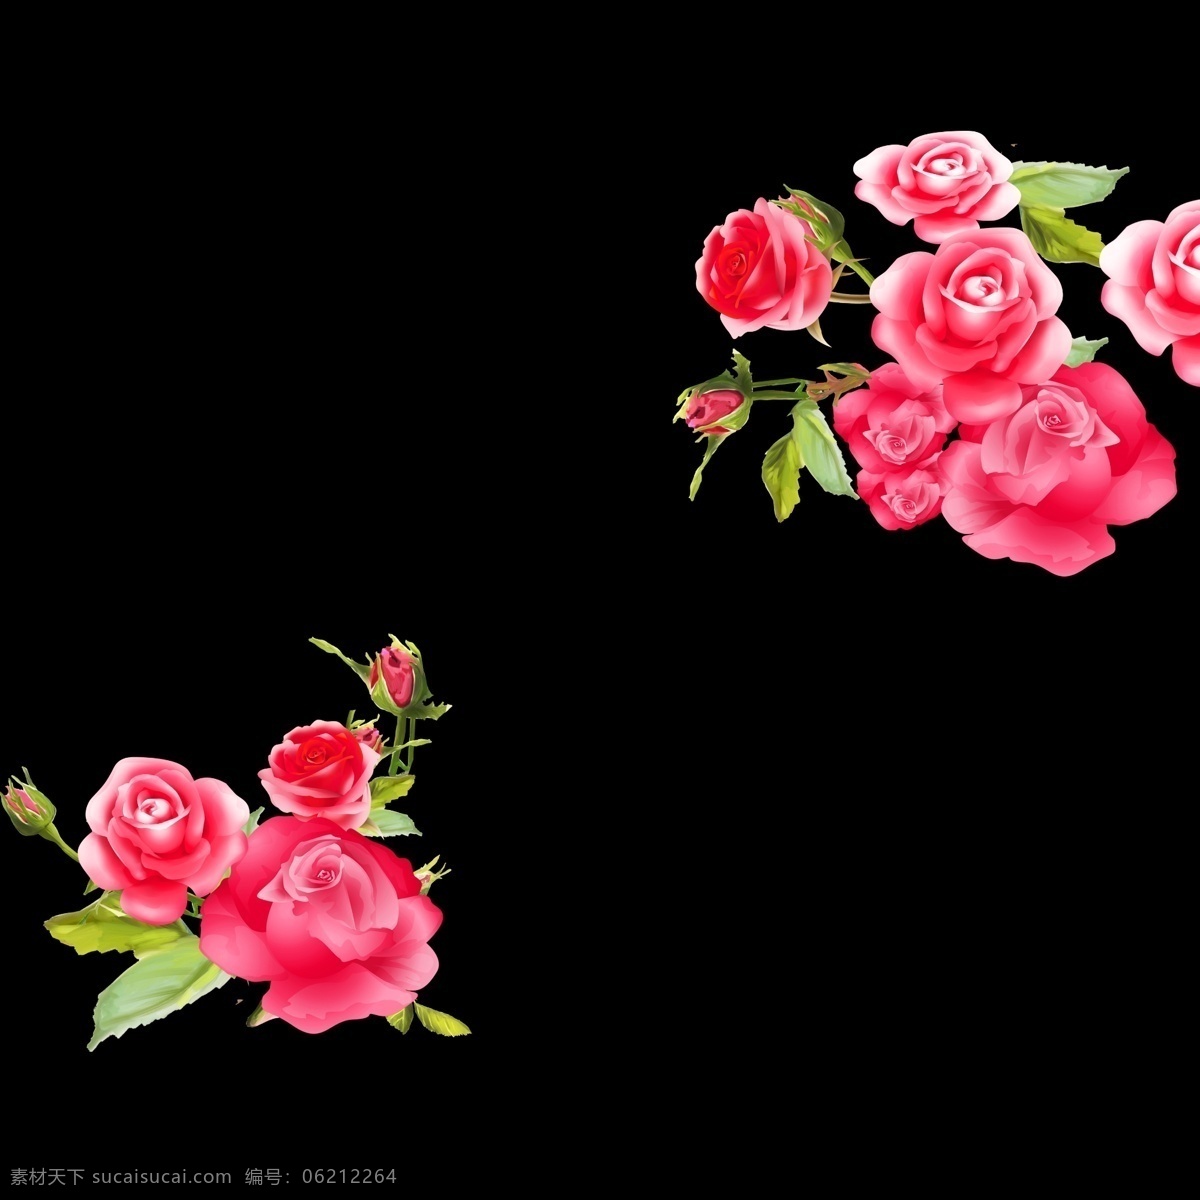 玫瑰花图片 花朵 手绘 透明 粉色 玫瑰 花草 花束 一束花 花瓣 高清 超清 画质 分层